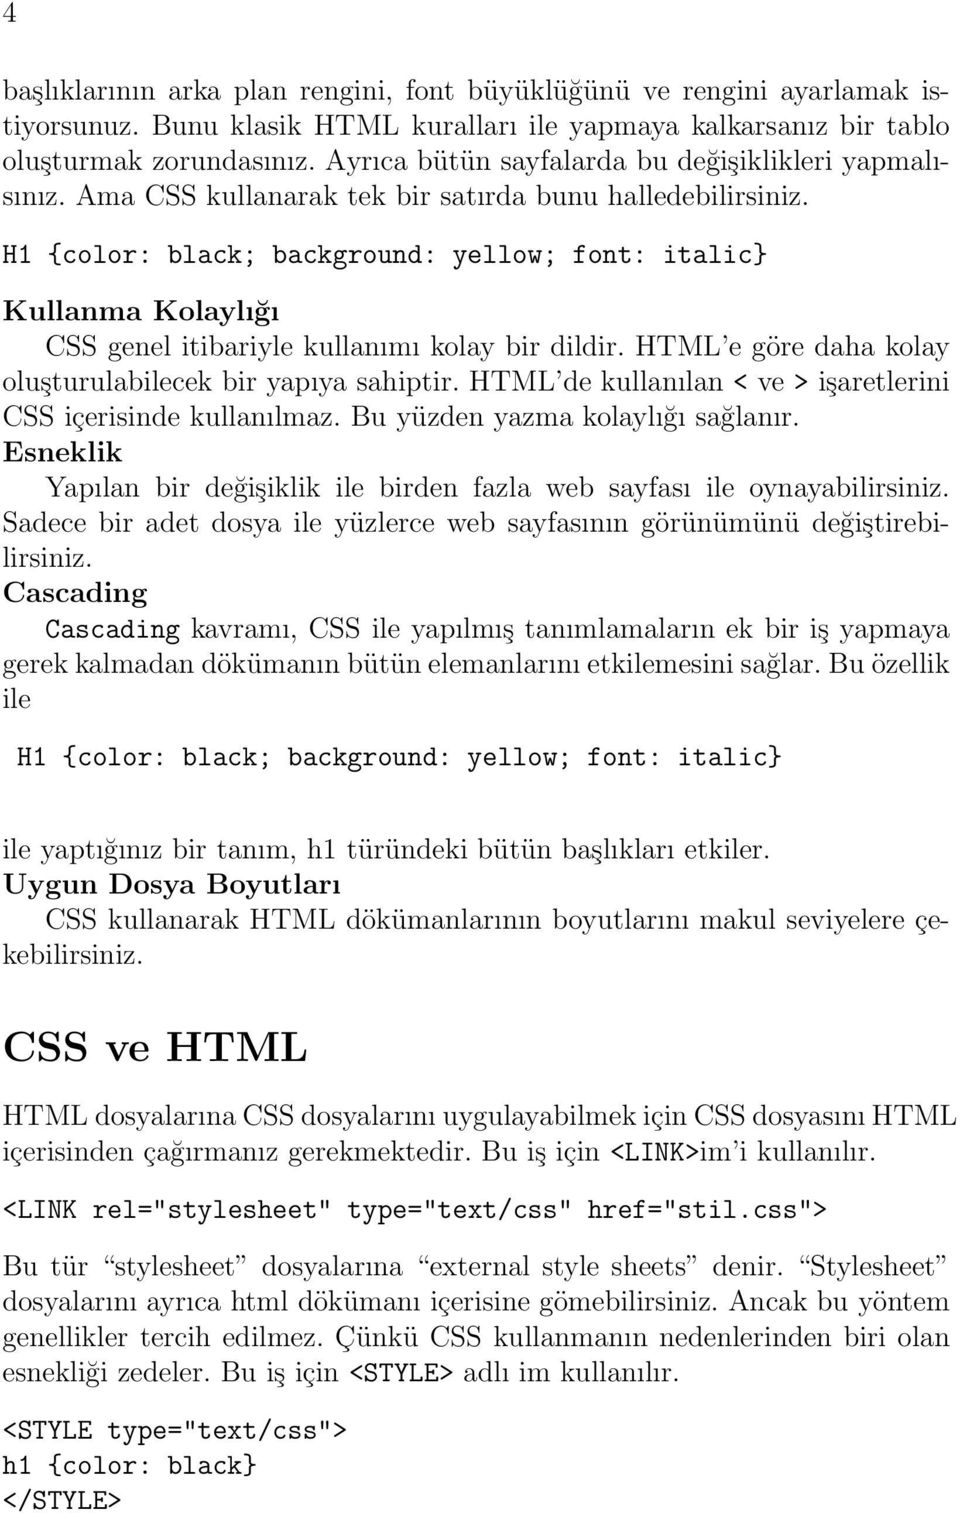 H1 {color: black; background: yellow; font: italic} Kullanma Kolaylığı CSS genel itibariyle kullanımı kolay bir dildir. HTML e göre daha kolay oluşturulabilecek bir yapıya sahiptir.